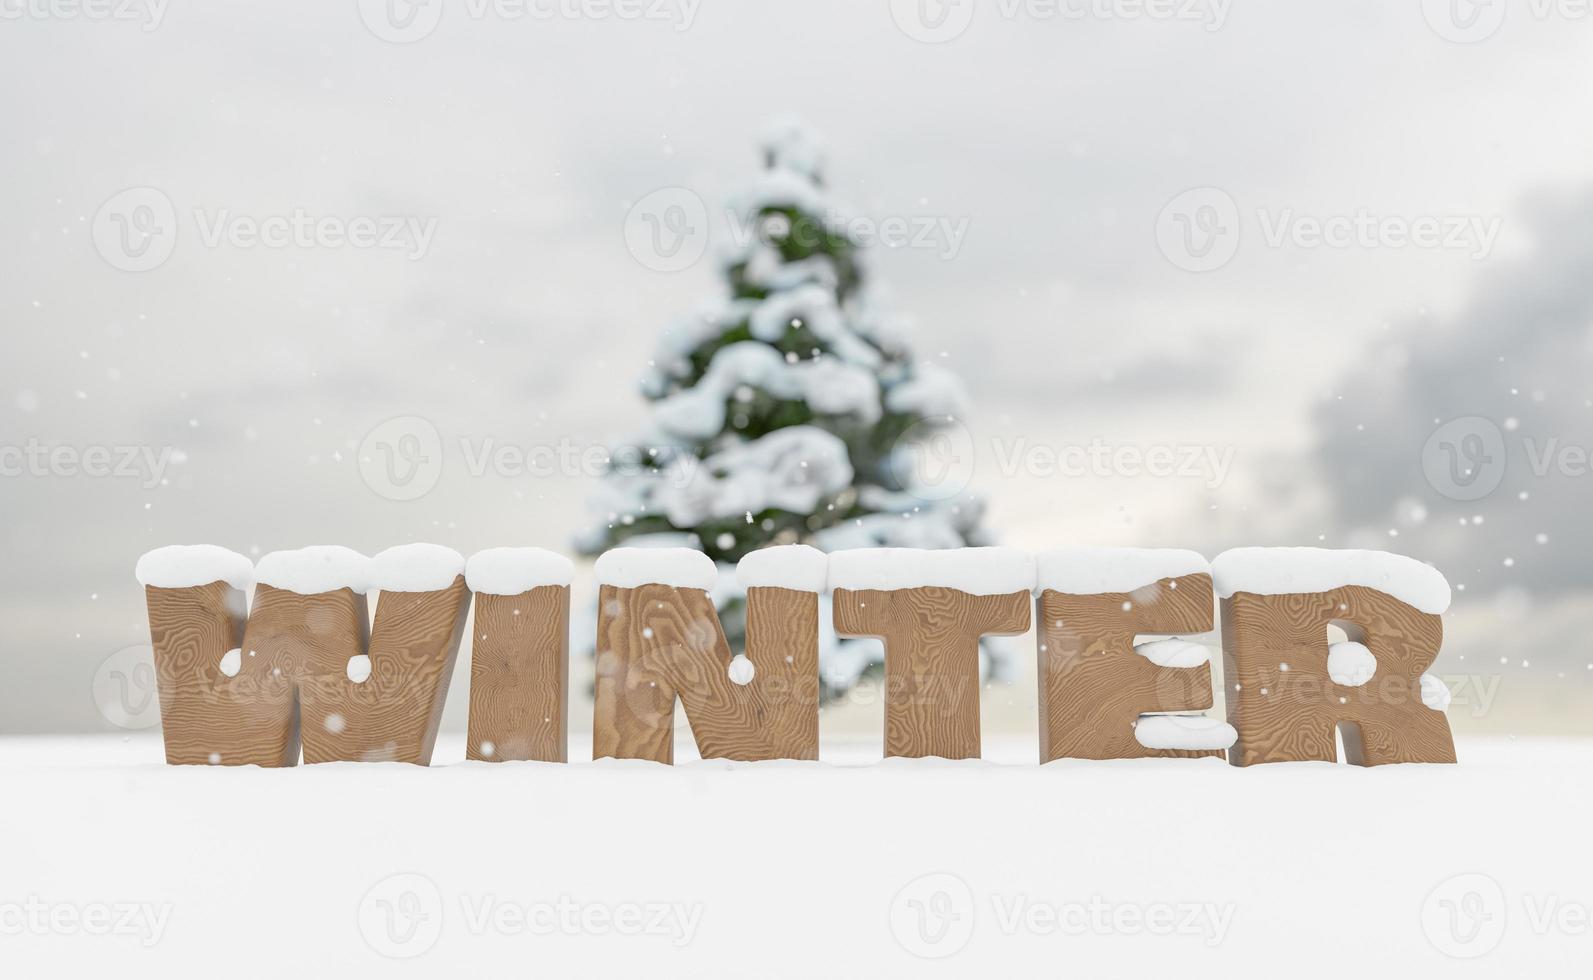 panneau en bois enneigé avec le mot hiver photo